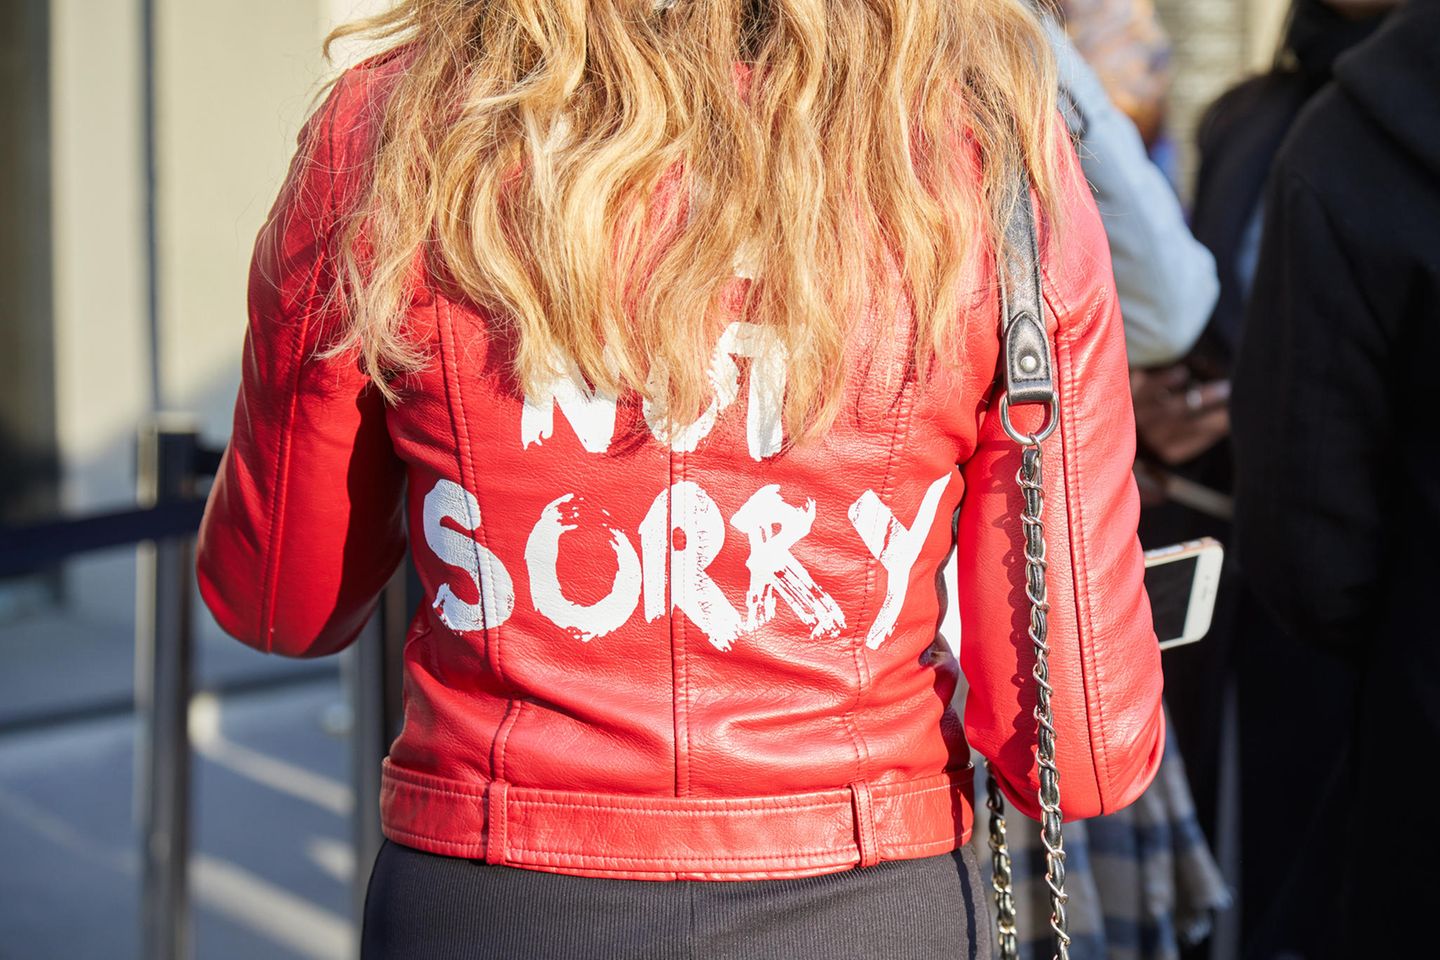 Nicht entschuldigen: Eine Frau trägt eine Jacke mit der Aufschrift "not sorry"